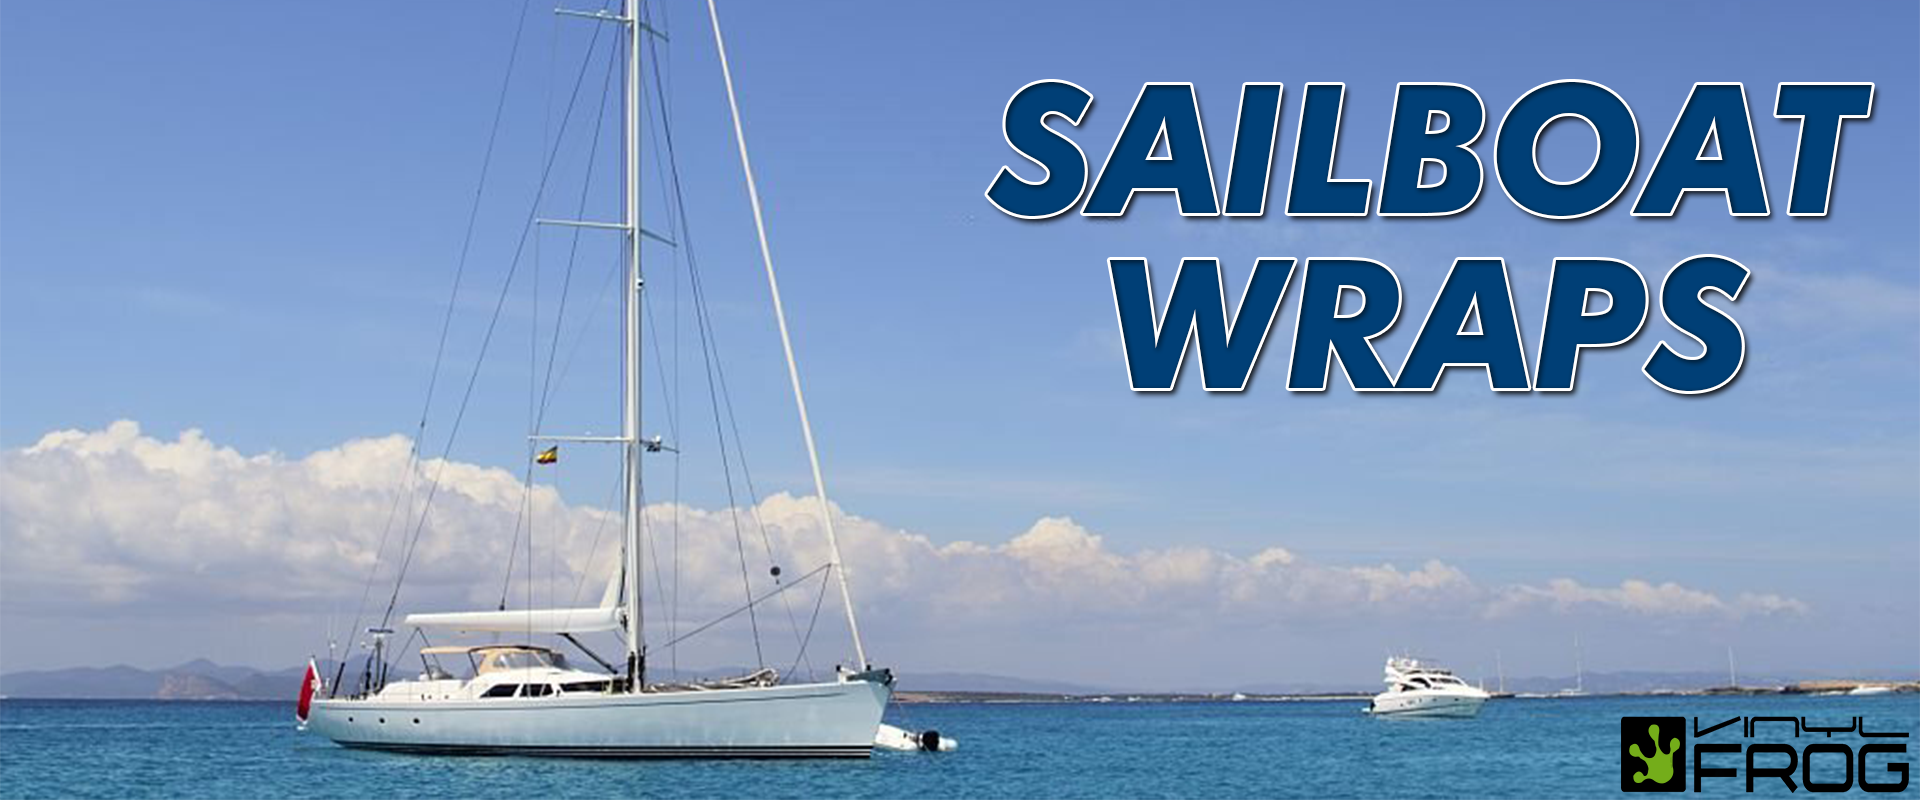 Sailboat Wraps